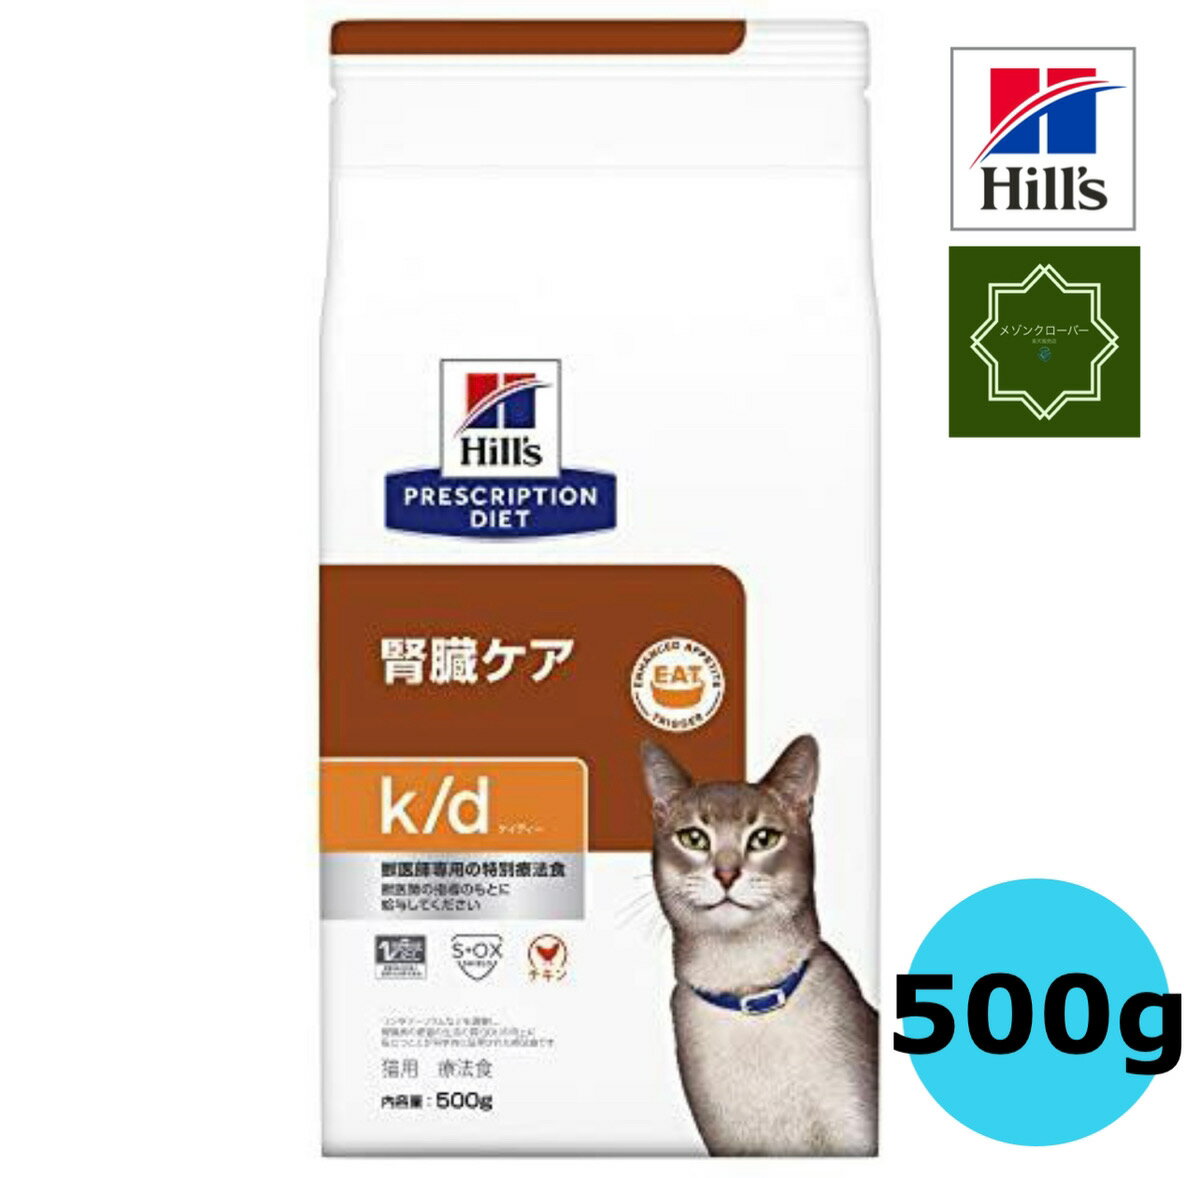 ヒルズ 猫用 キャットフード k/d 腎臓ケア チキン ドライ 500g プリスクリプション・ダイエット 